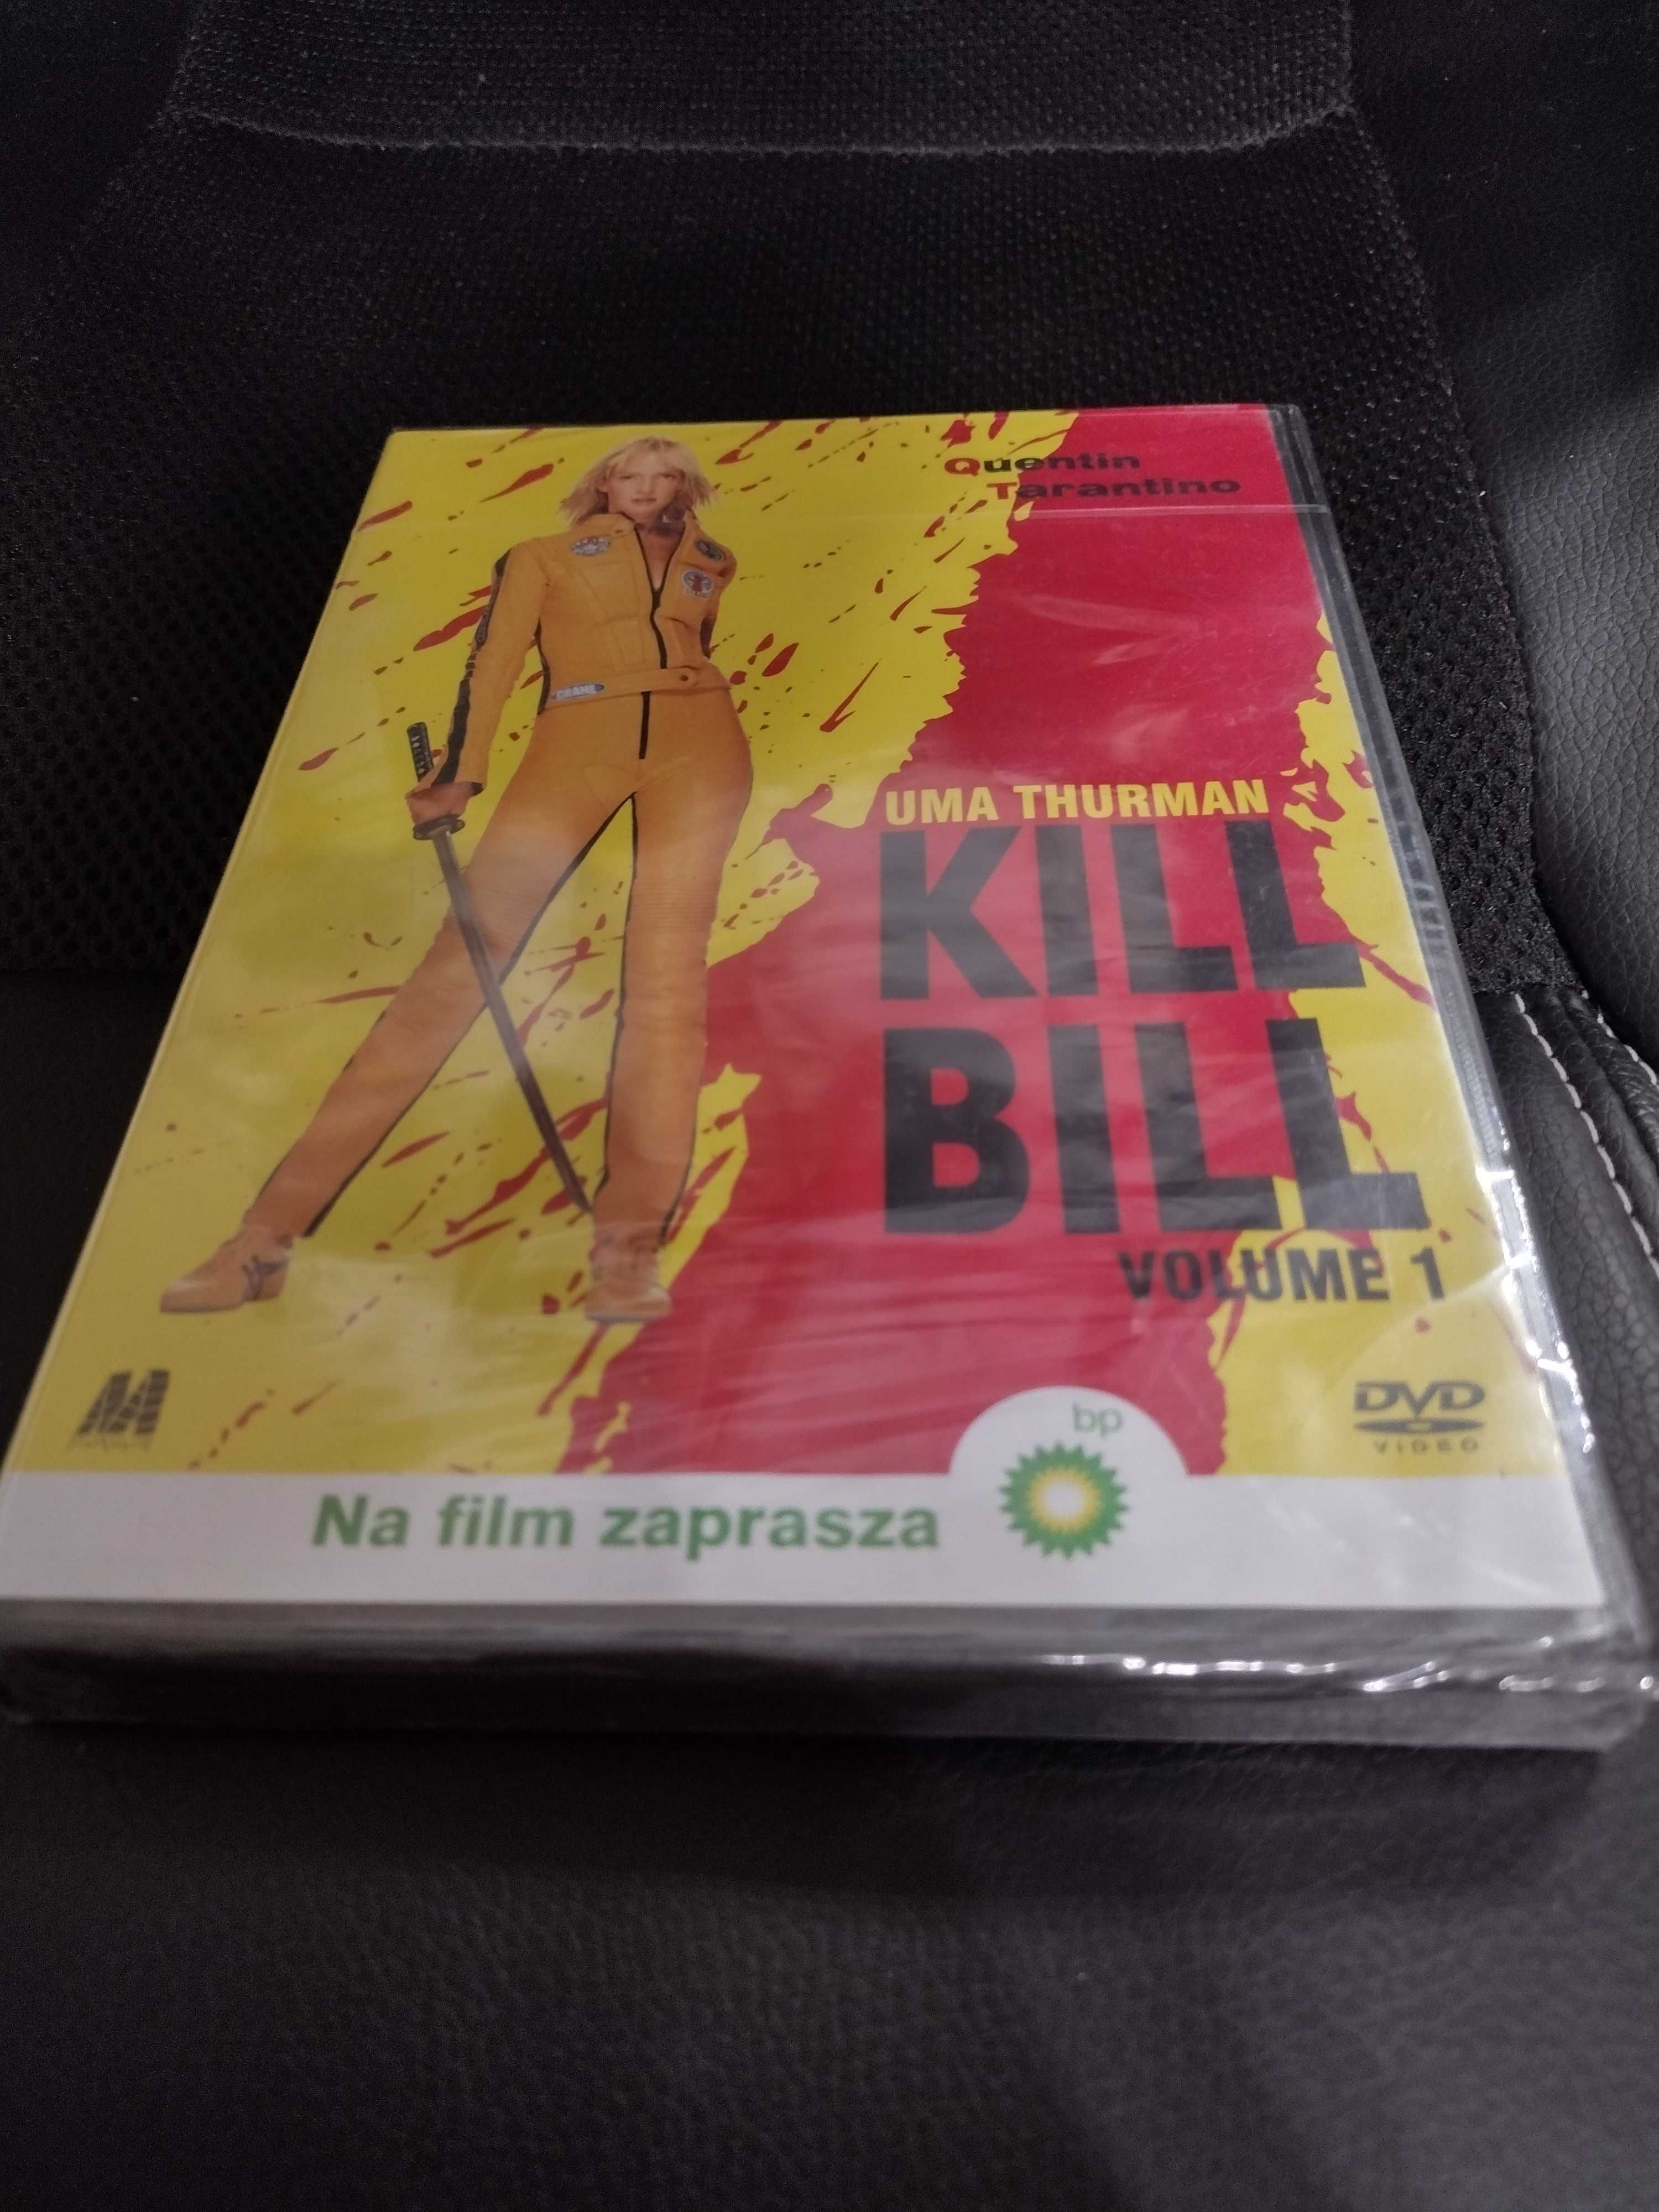 "Kill Bill" DVD.